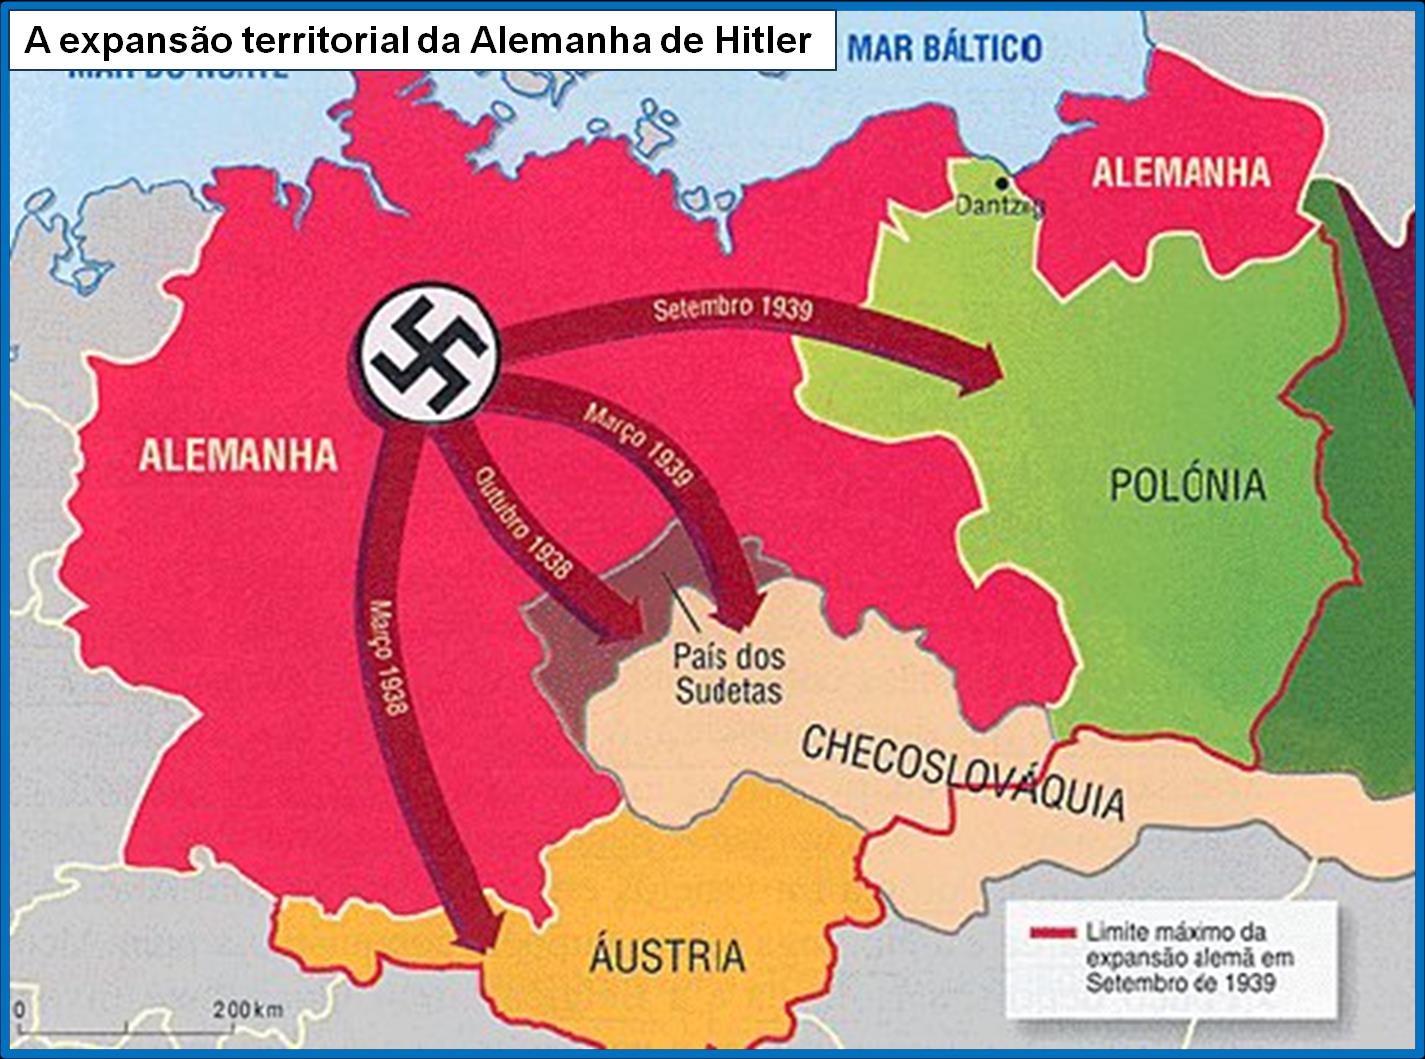 Prelúdio: 1935-1938 Os últimos eventos foram o Anschluss e o Tratado de Munique.